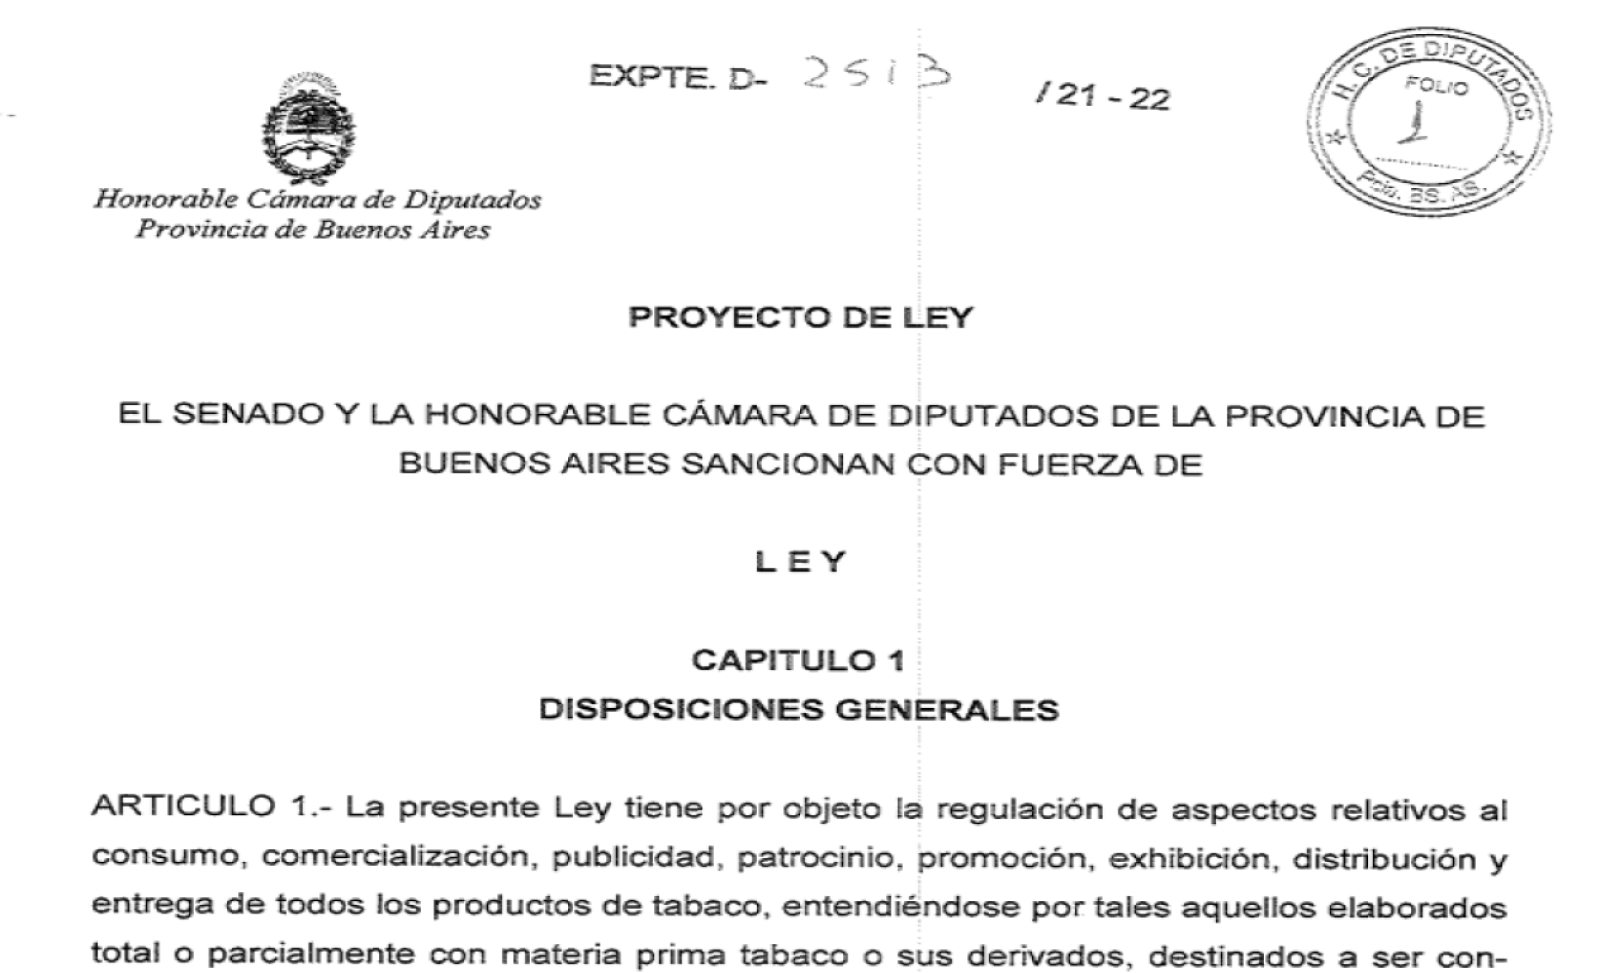 Pedido de audiencia:  Modificación Articulo 3° Proyecto Ley Expediente D-2513/21-22 de la Provincia de Buenos Aires